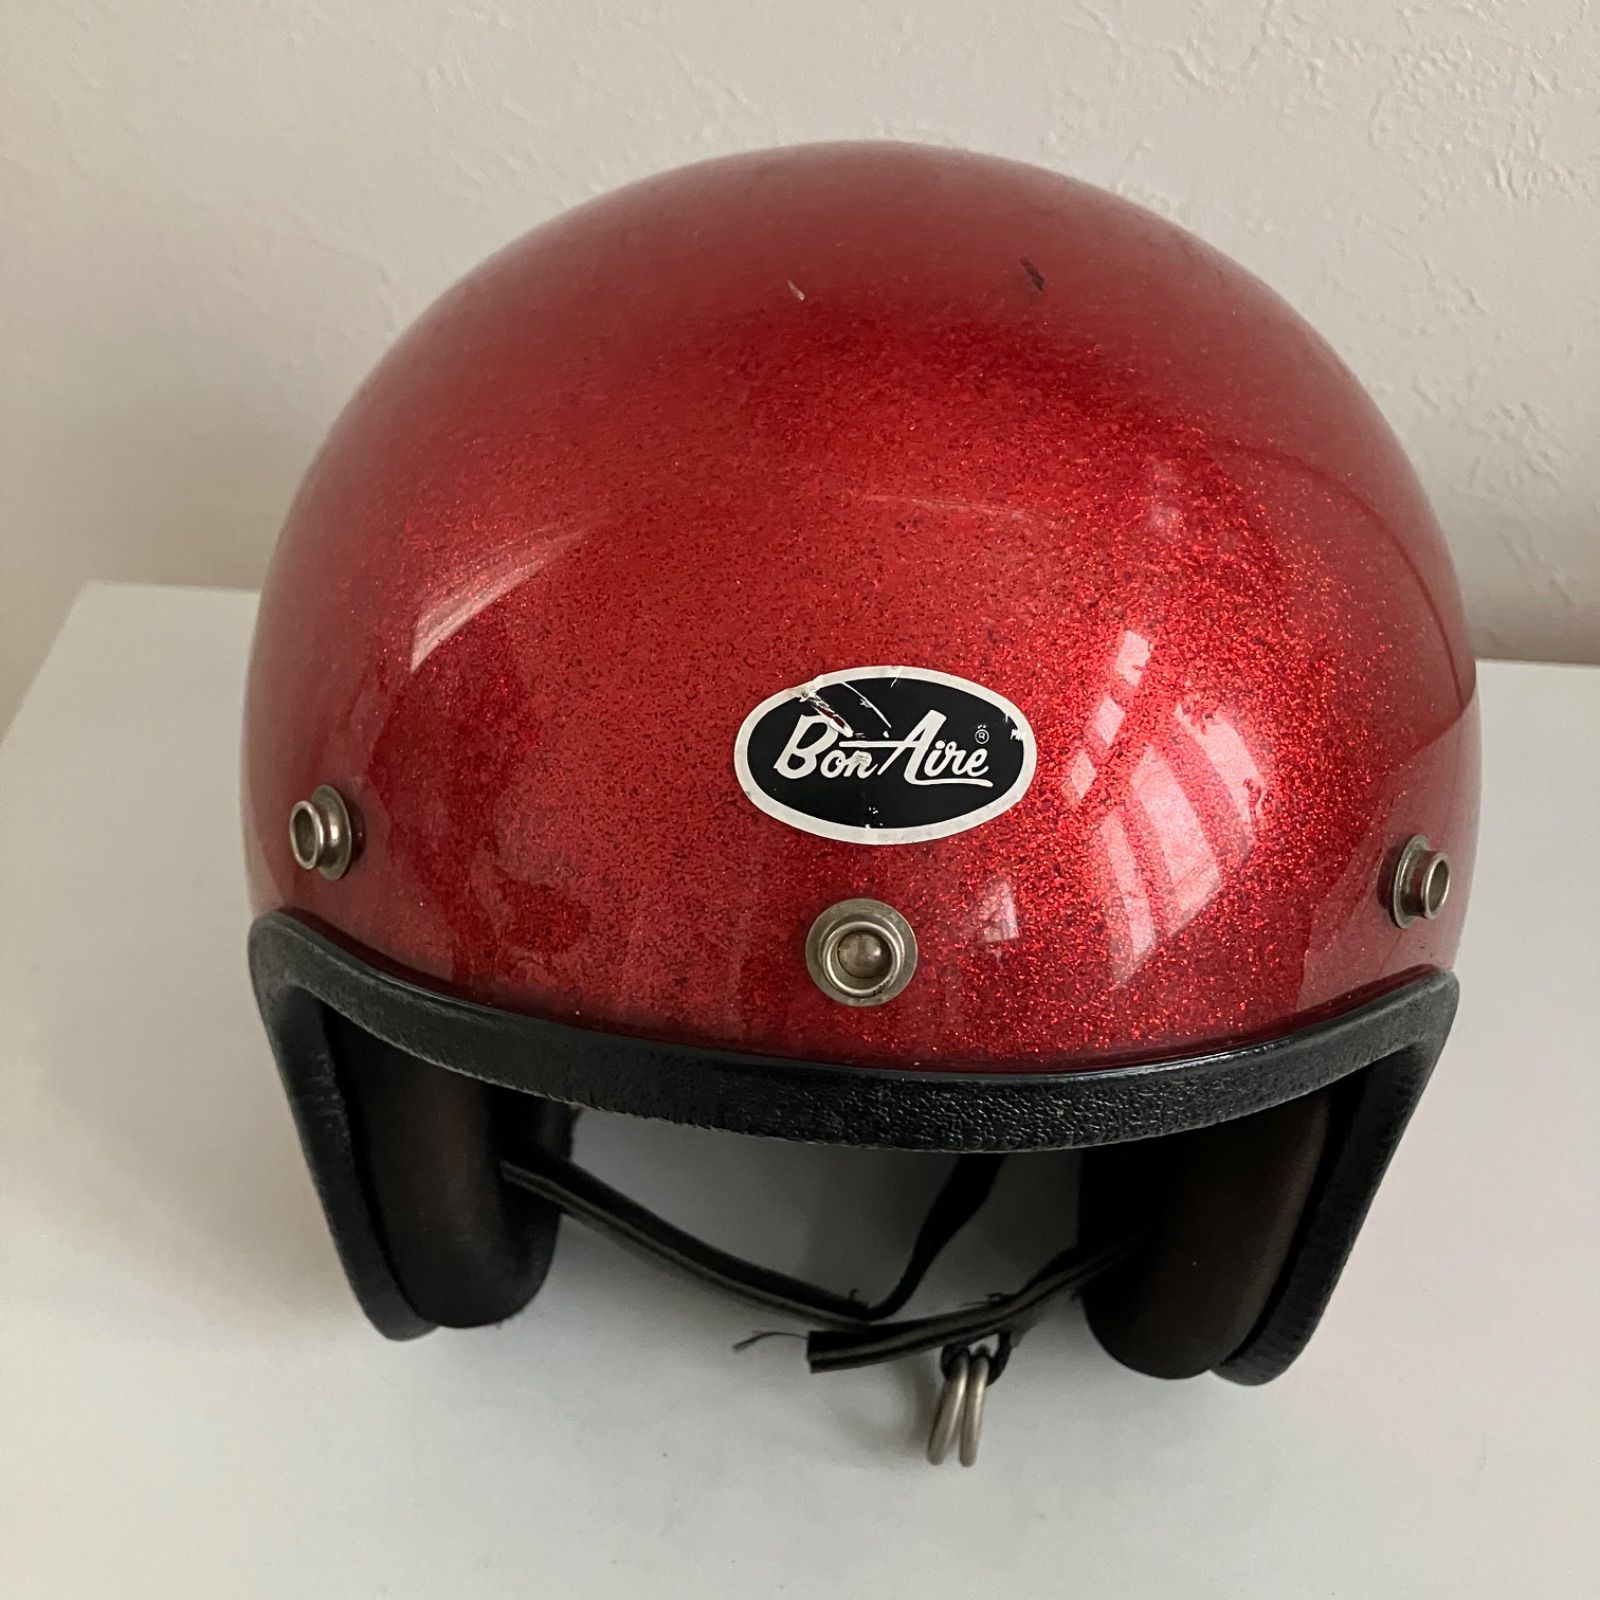 BON AIRE☆ビンテージヘルメット 1970年代 ヘルメット 赤 フレーク 